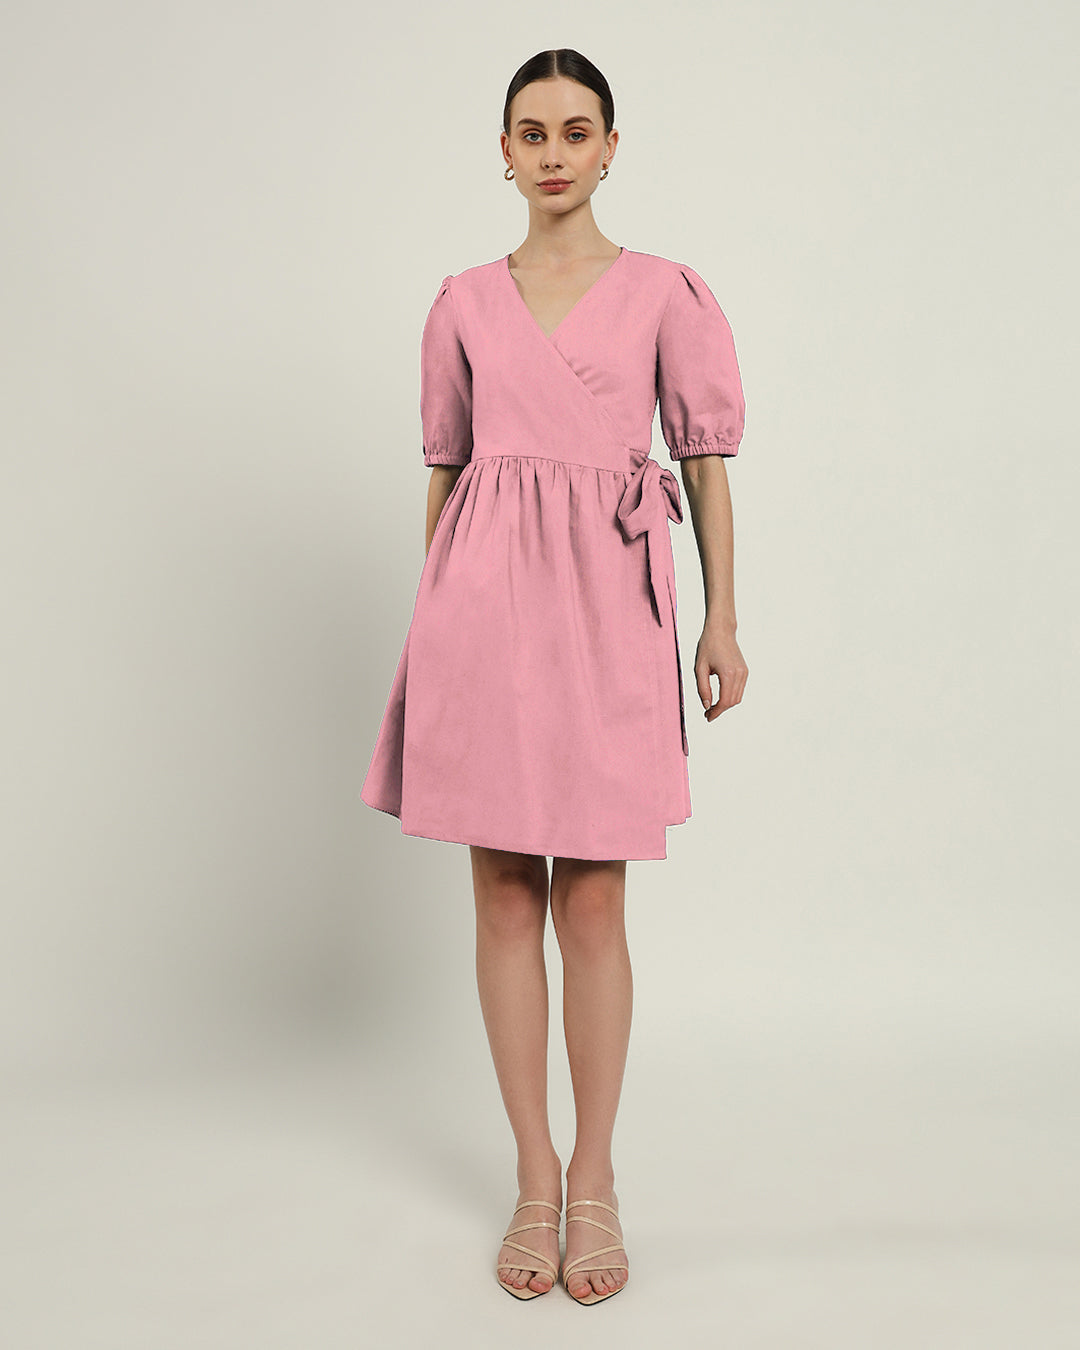 The Inzai Fondant Pink Dress